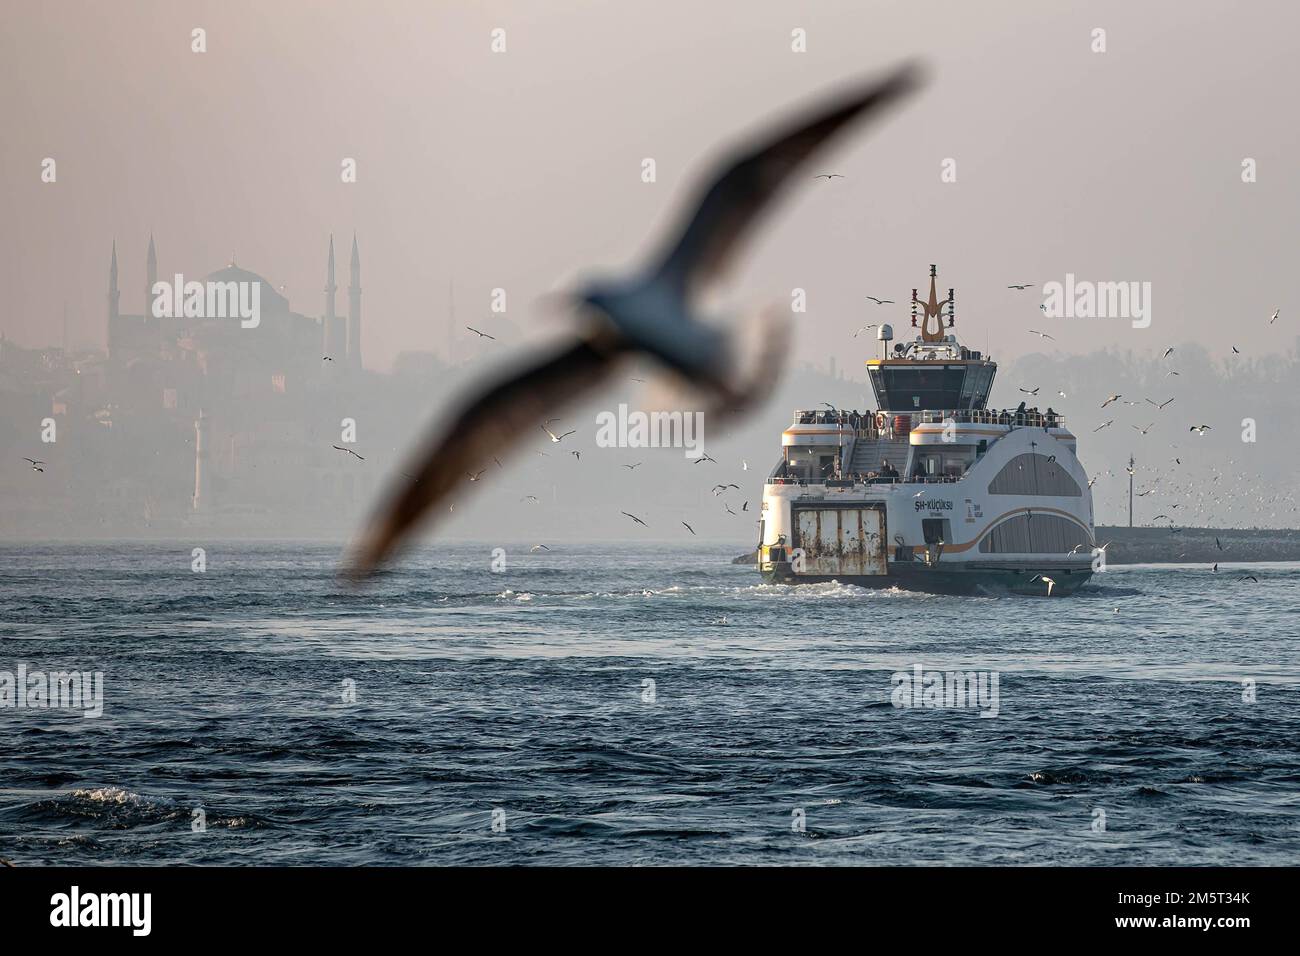 Des mouettes volent autour des lignes de ferry de la ville et de la mosquée Sainte-Sophie en arrière-plan. Bien que le temps ait été exceptionnellement chaud à Istanbul, les gens se sont amusés autour de la jetée de Kadikoy. Banque D'Images